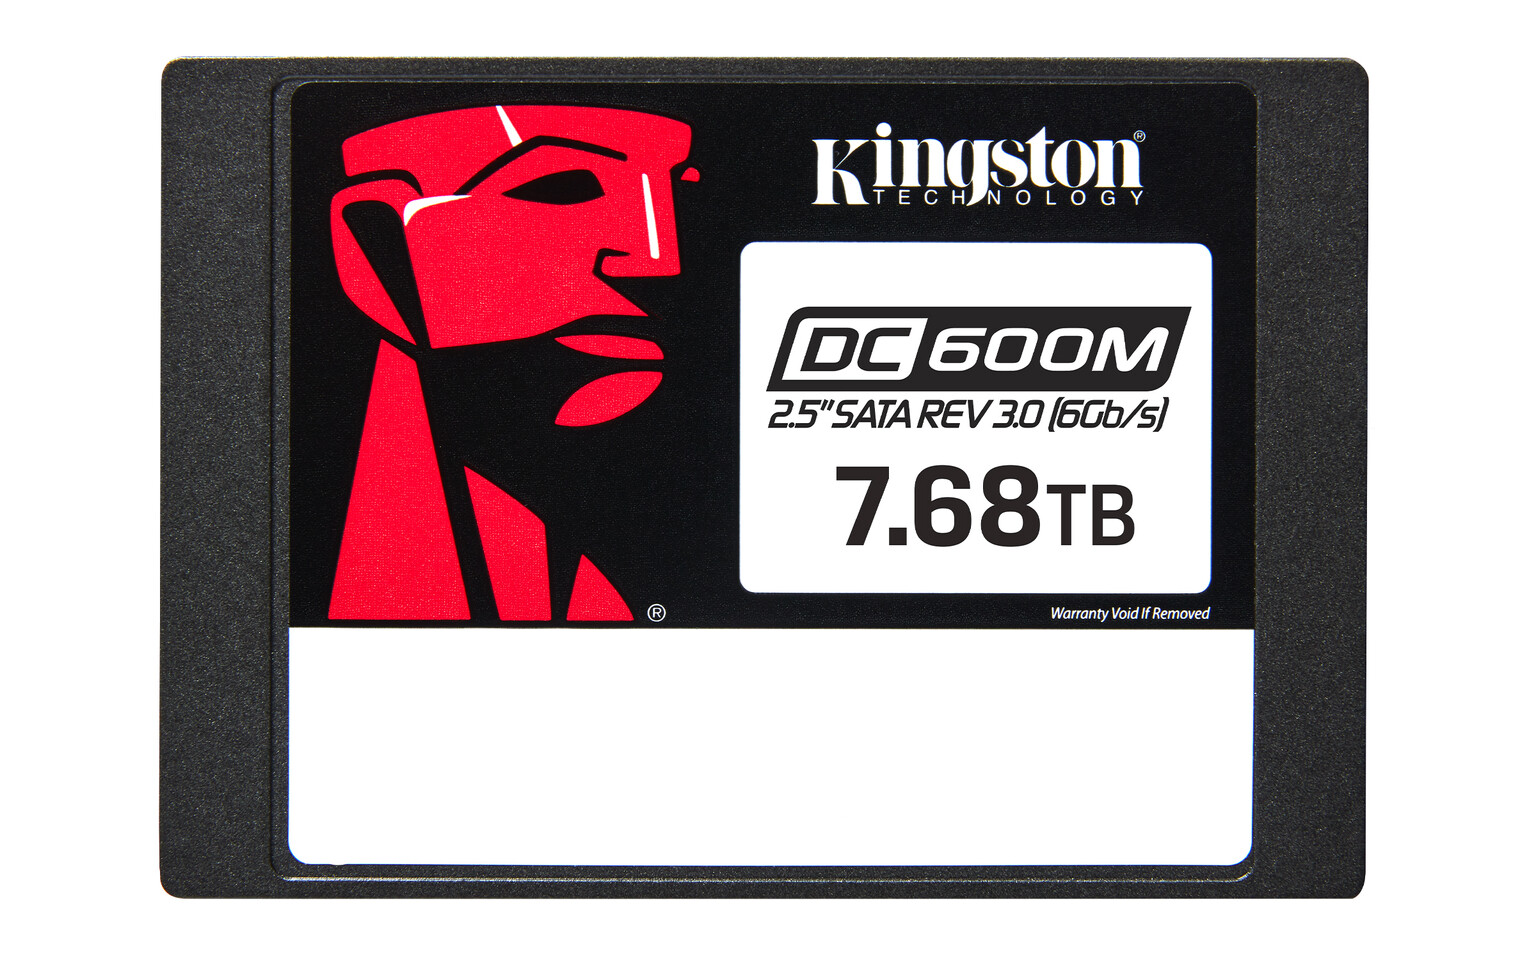 Kingston anuncia el SSD DC600M Enterprise